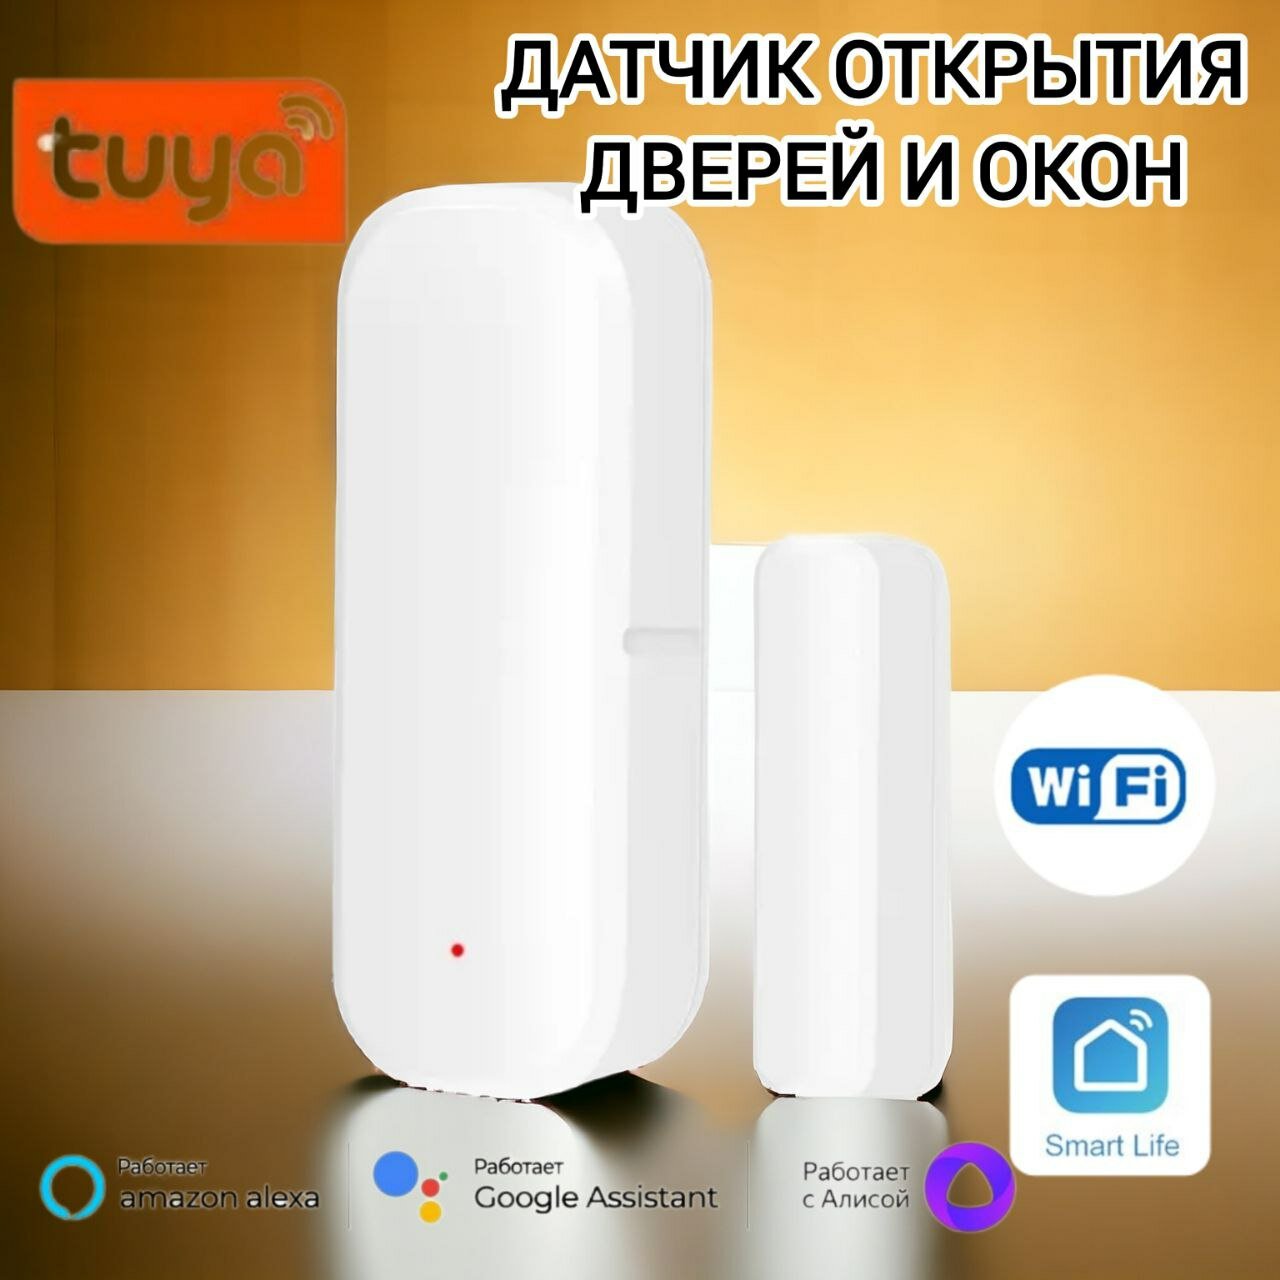 Умный Wi-Fi датчик открытия двери и окна Tuya безопасный контроль умная сигнализация. Работает с приложениями Smart Life Яндекс Алиса.